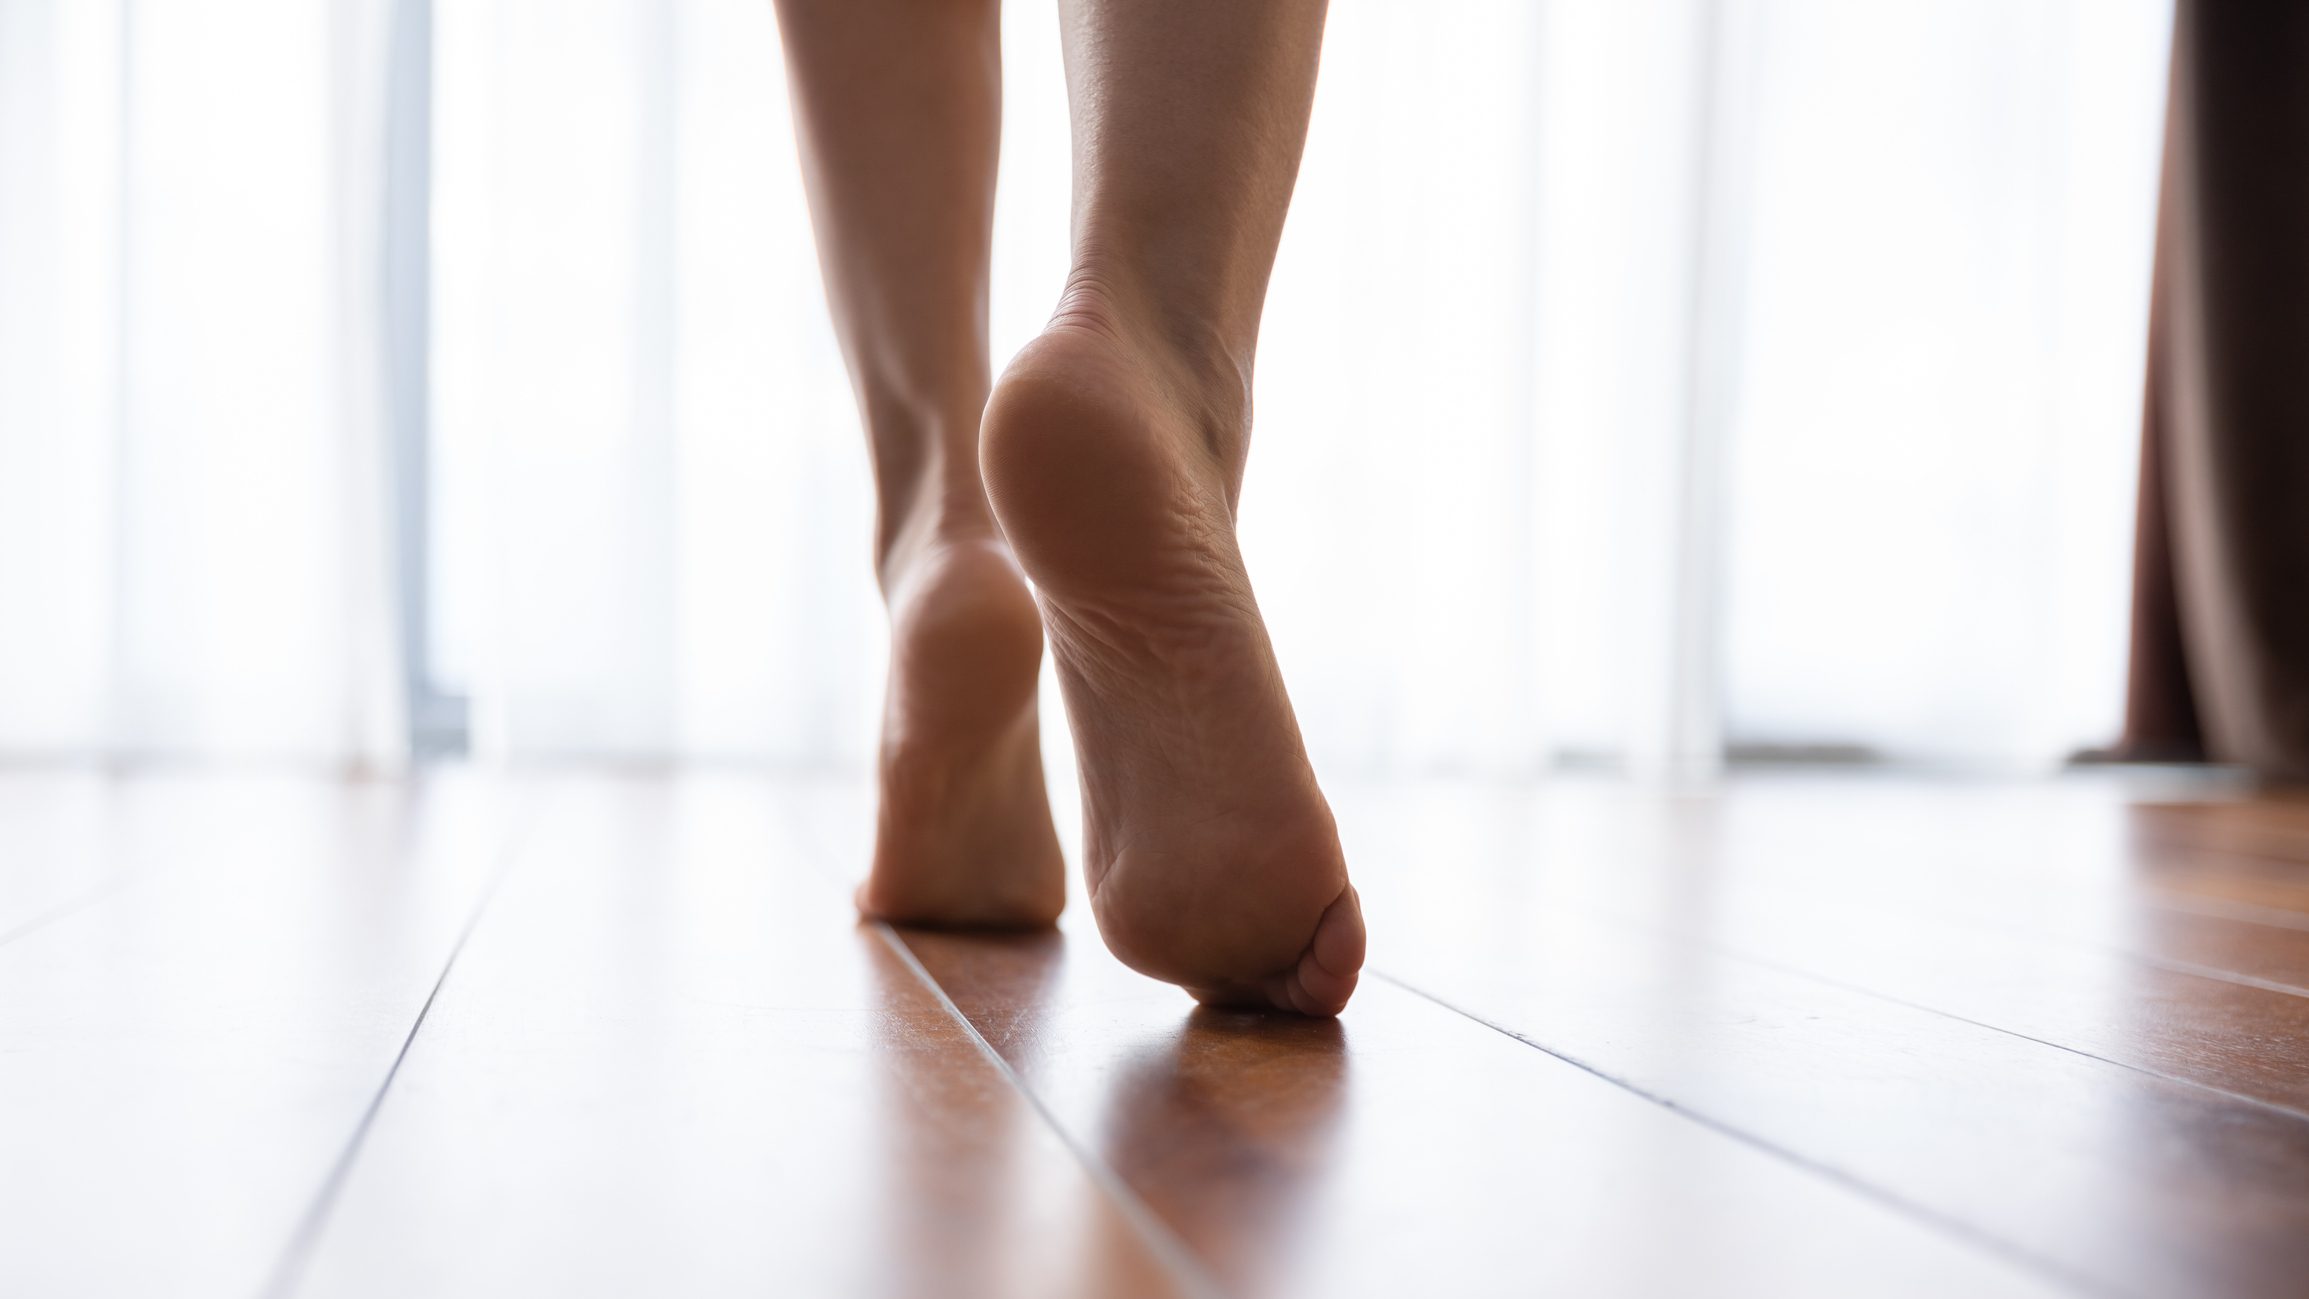 nærbillede af kvindens fødder, der går i hjemmet's feet walking in home